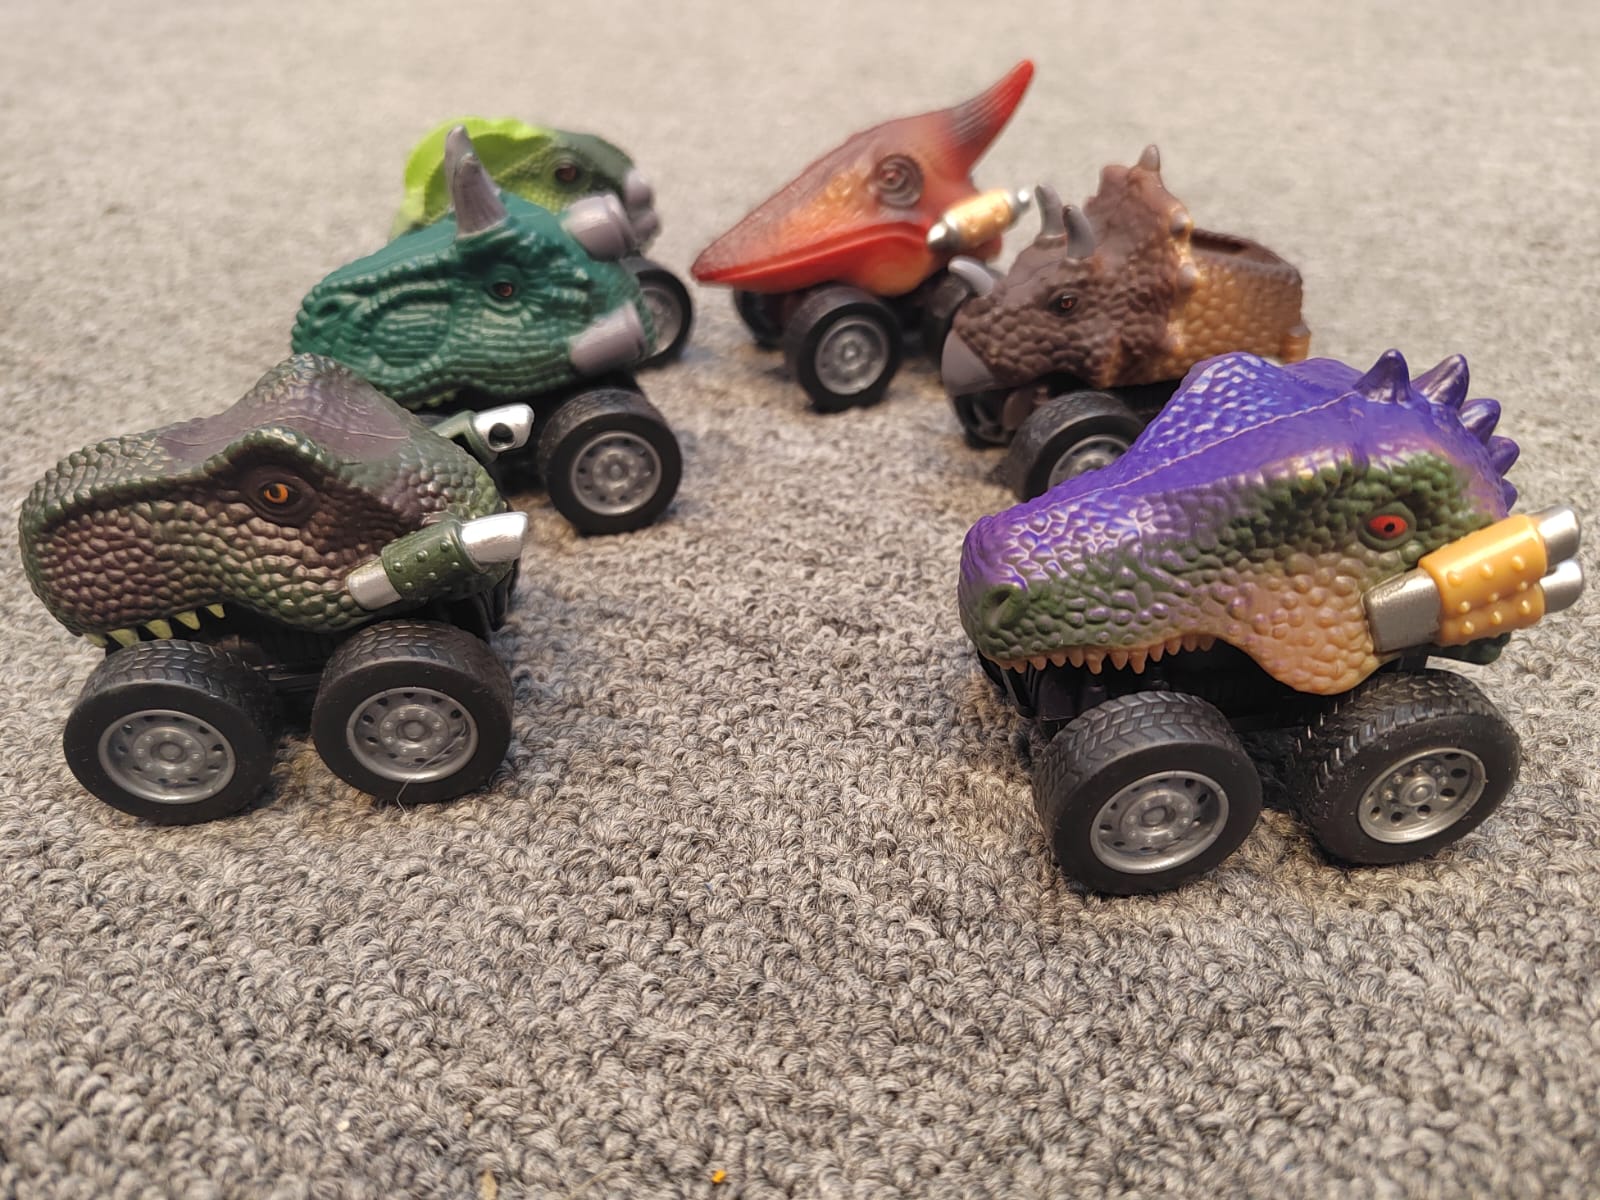 Dinosaur Cars